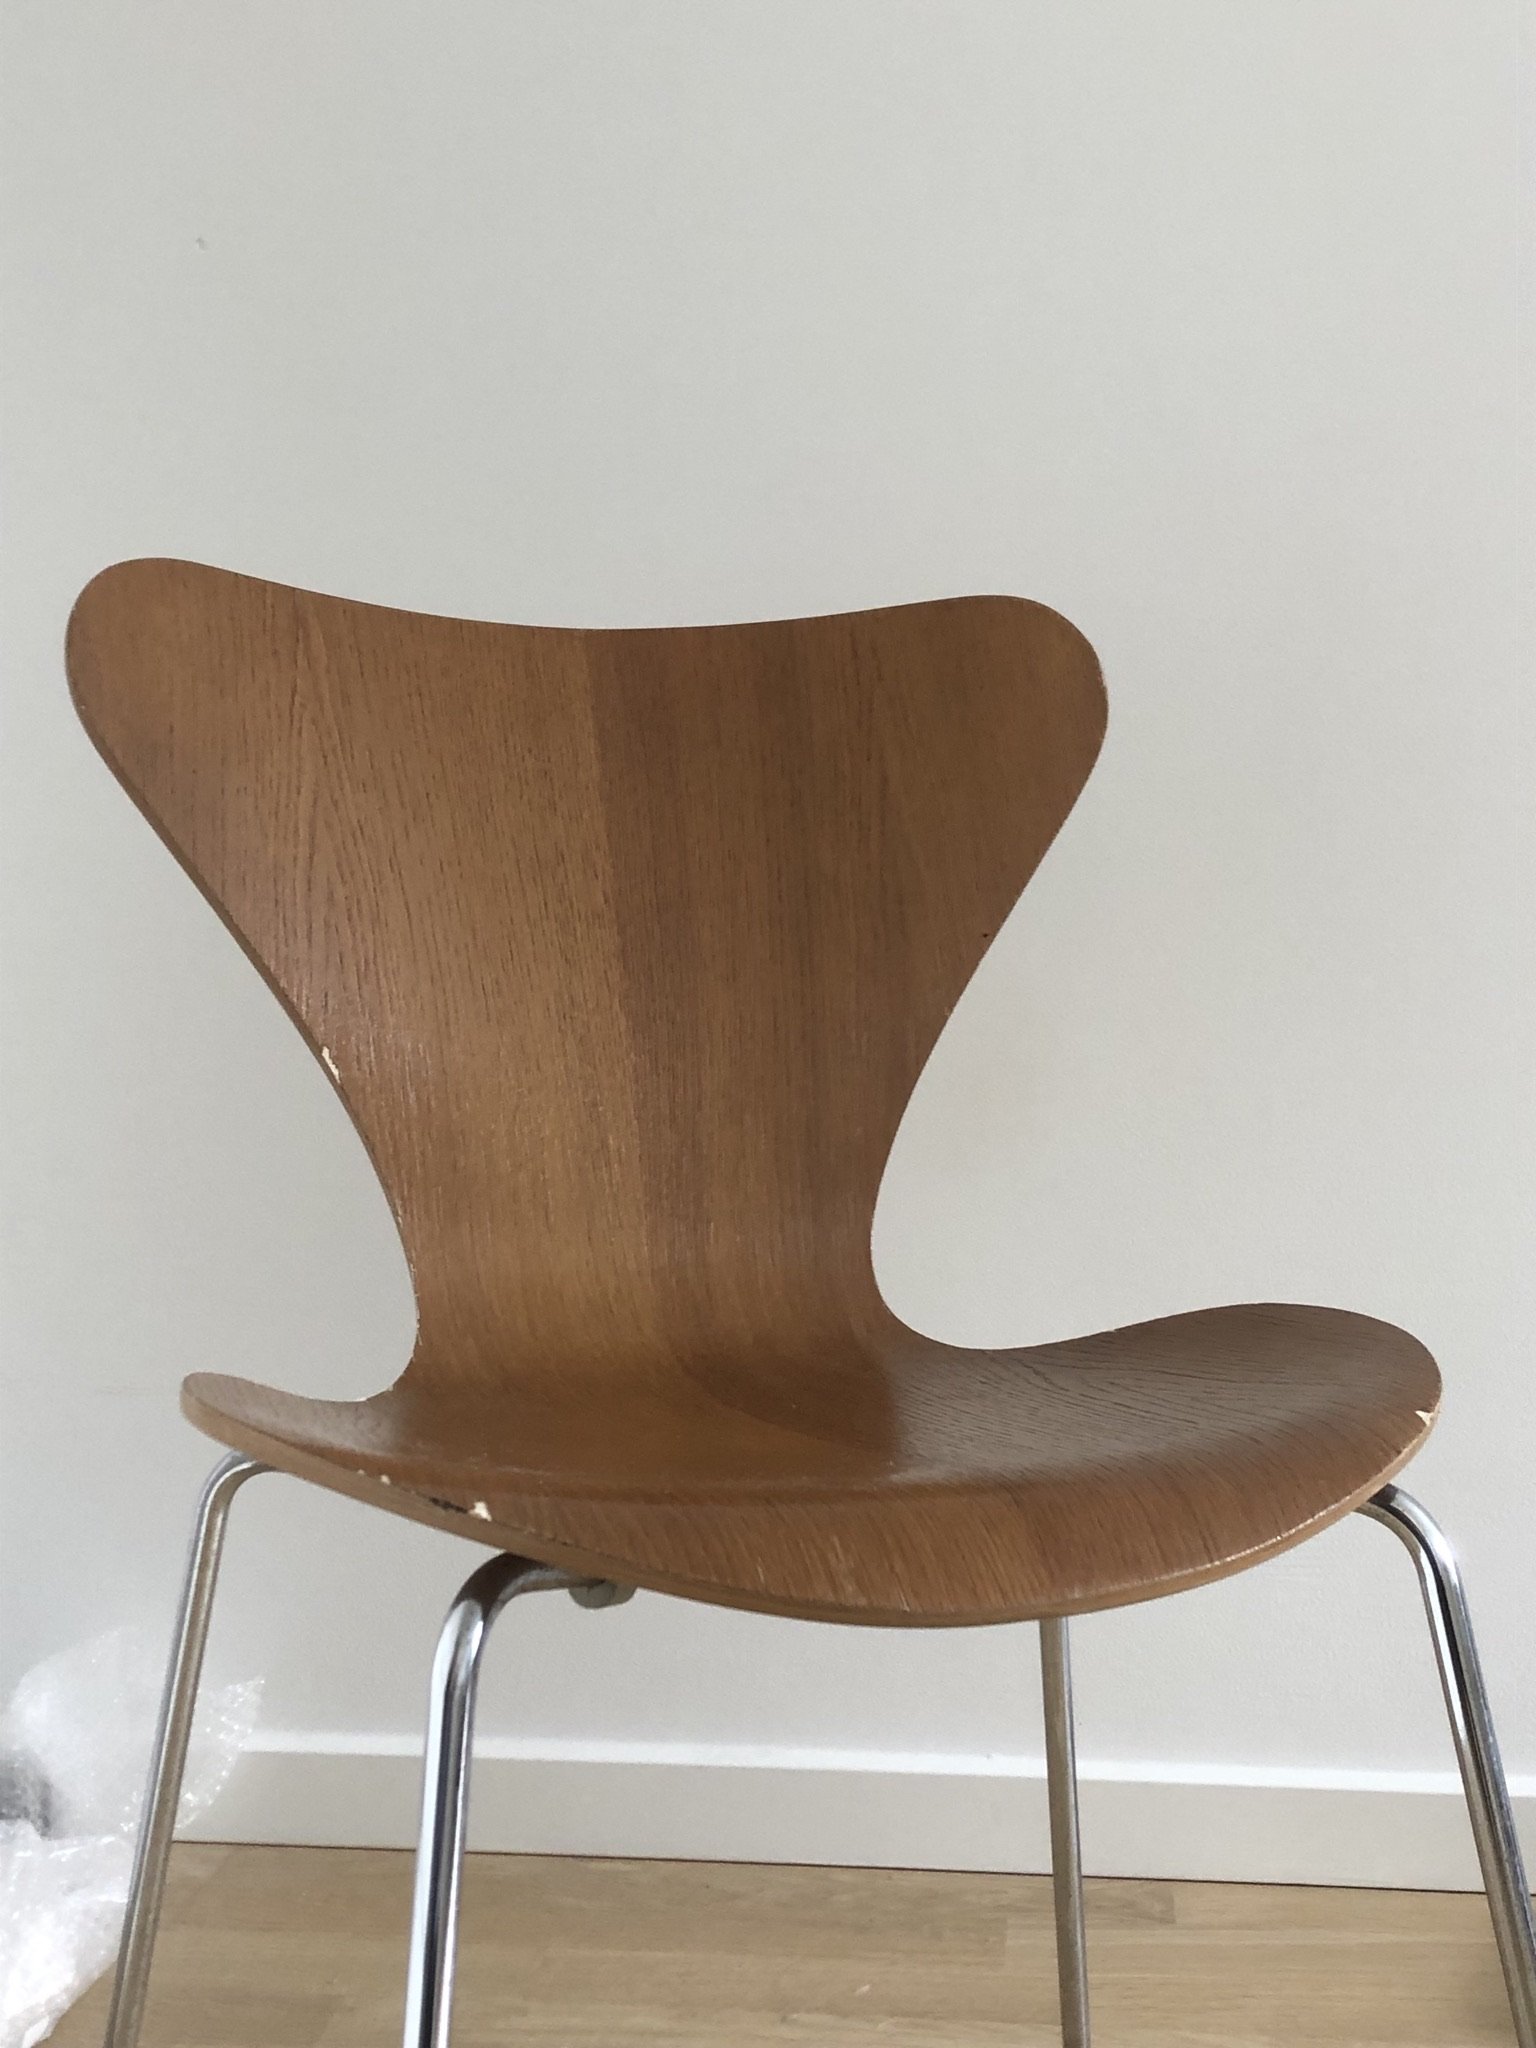 Syver-stol af Arne Jacobsen, 300 kr.